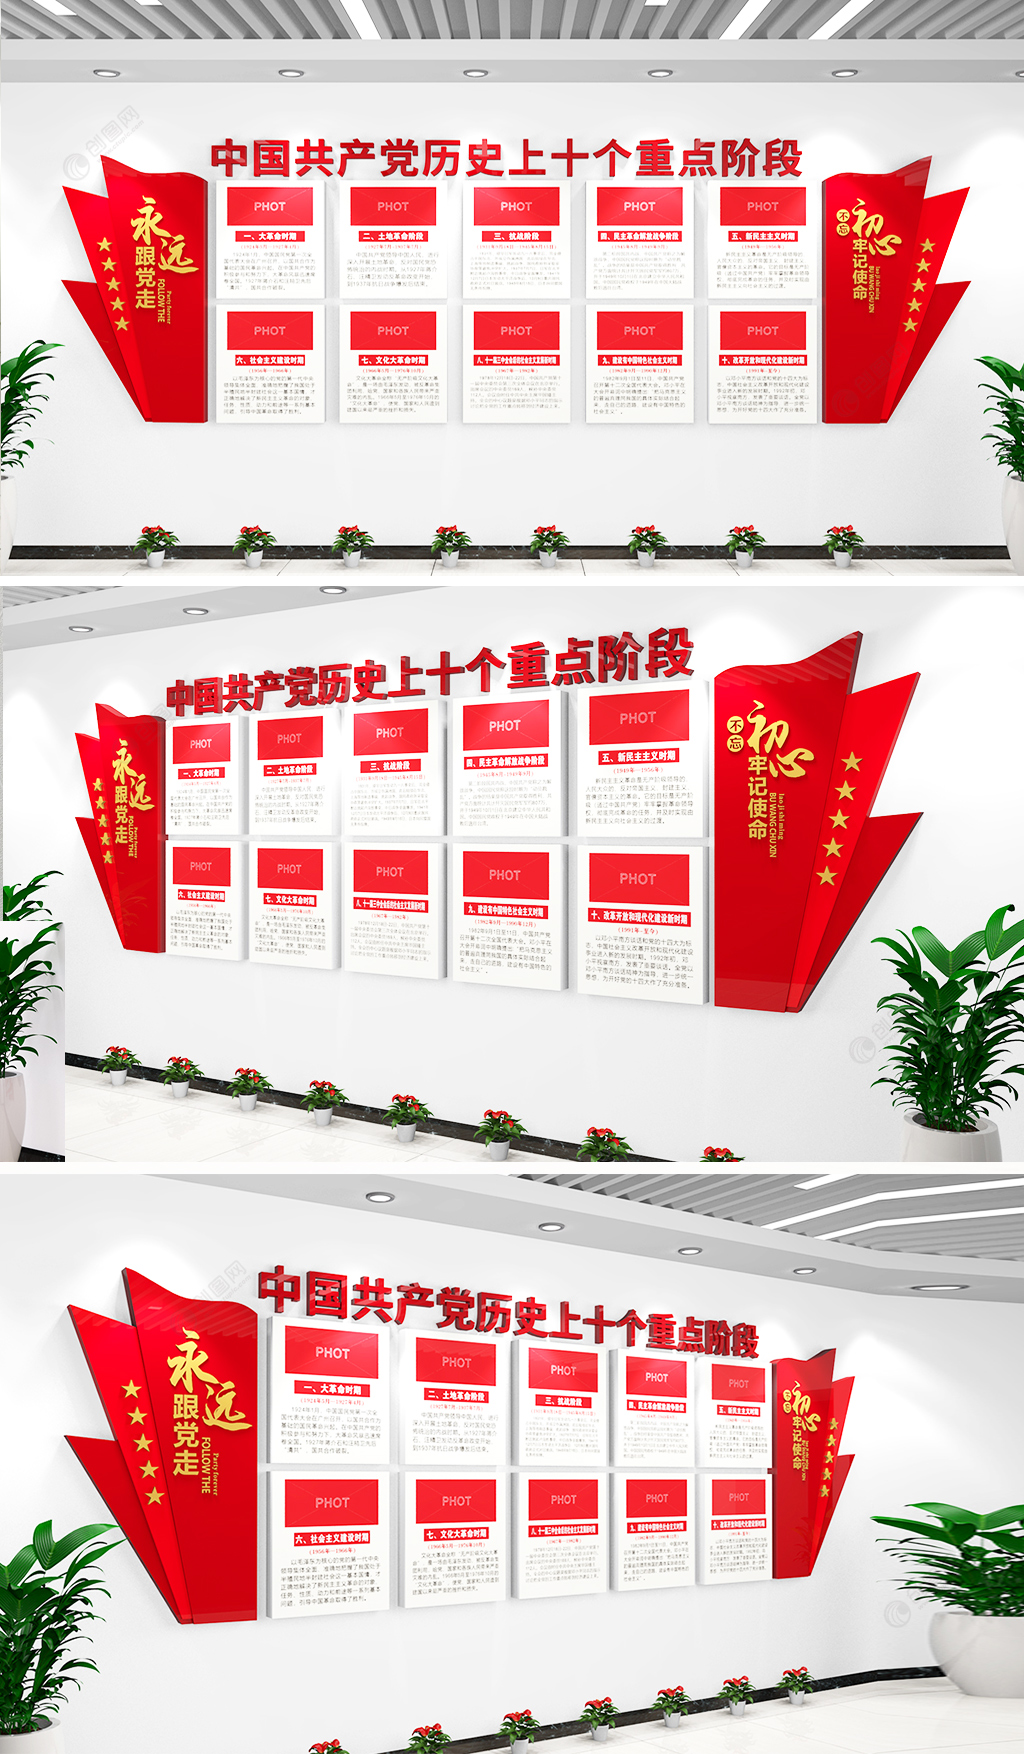 中国共产党发展十个阶段党史学习教育文化墙设计